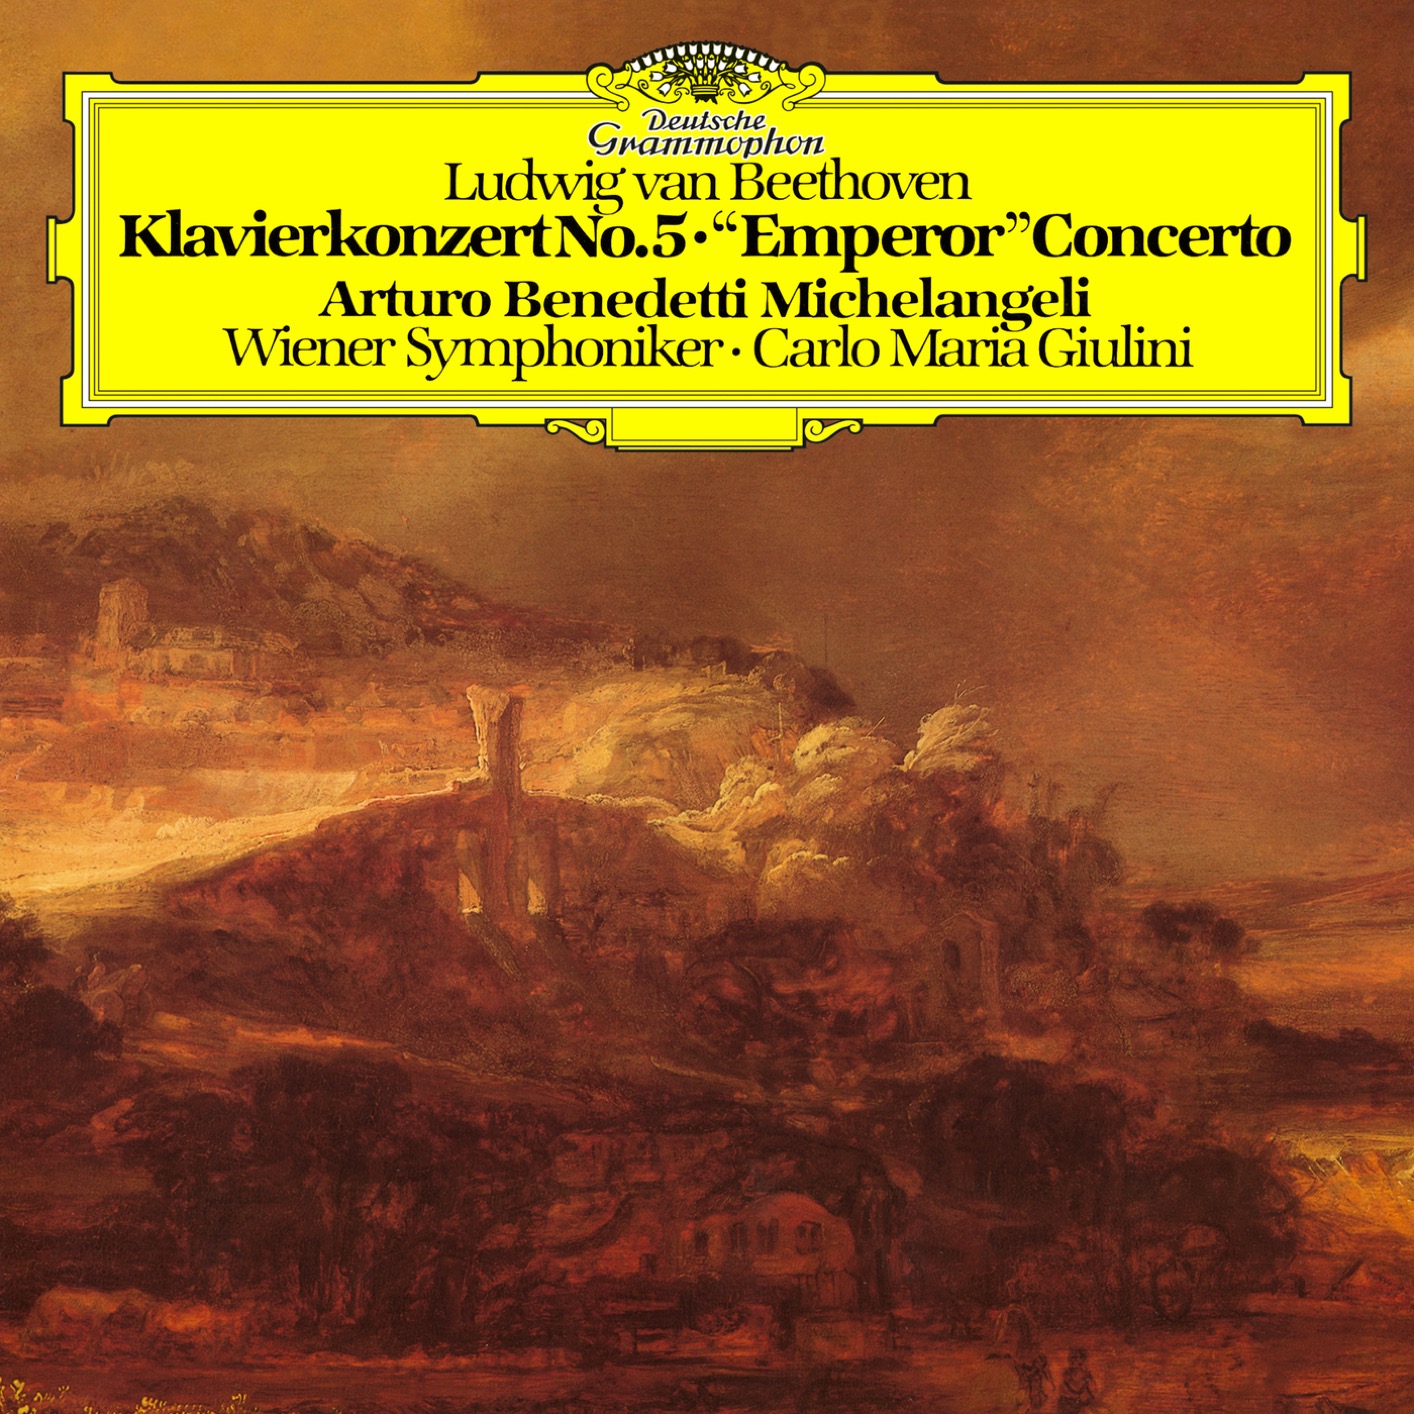 Arturo Benedetti Michelangeli – Beethoven: Piano Concerto No.5 in E-Flat Major, Op. 73 (Remastered) (2019) [FLAC 24bit/192kHz]